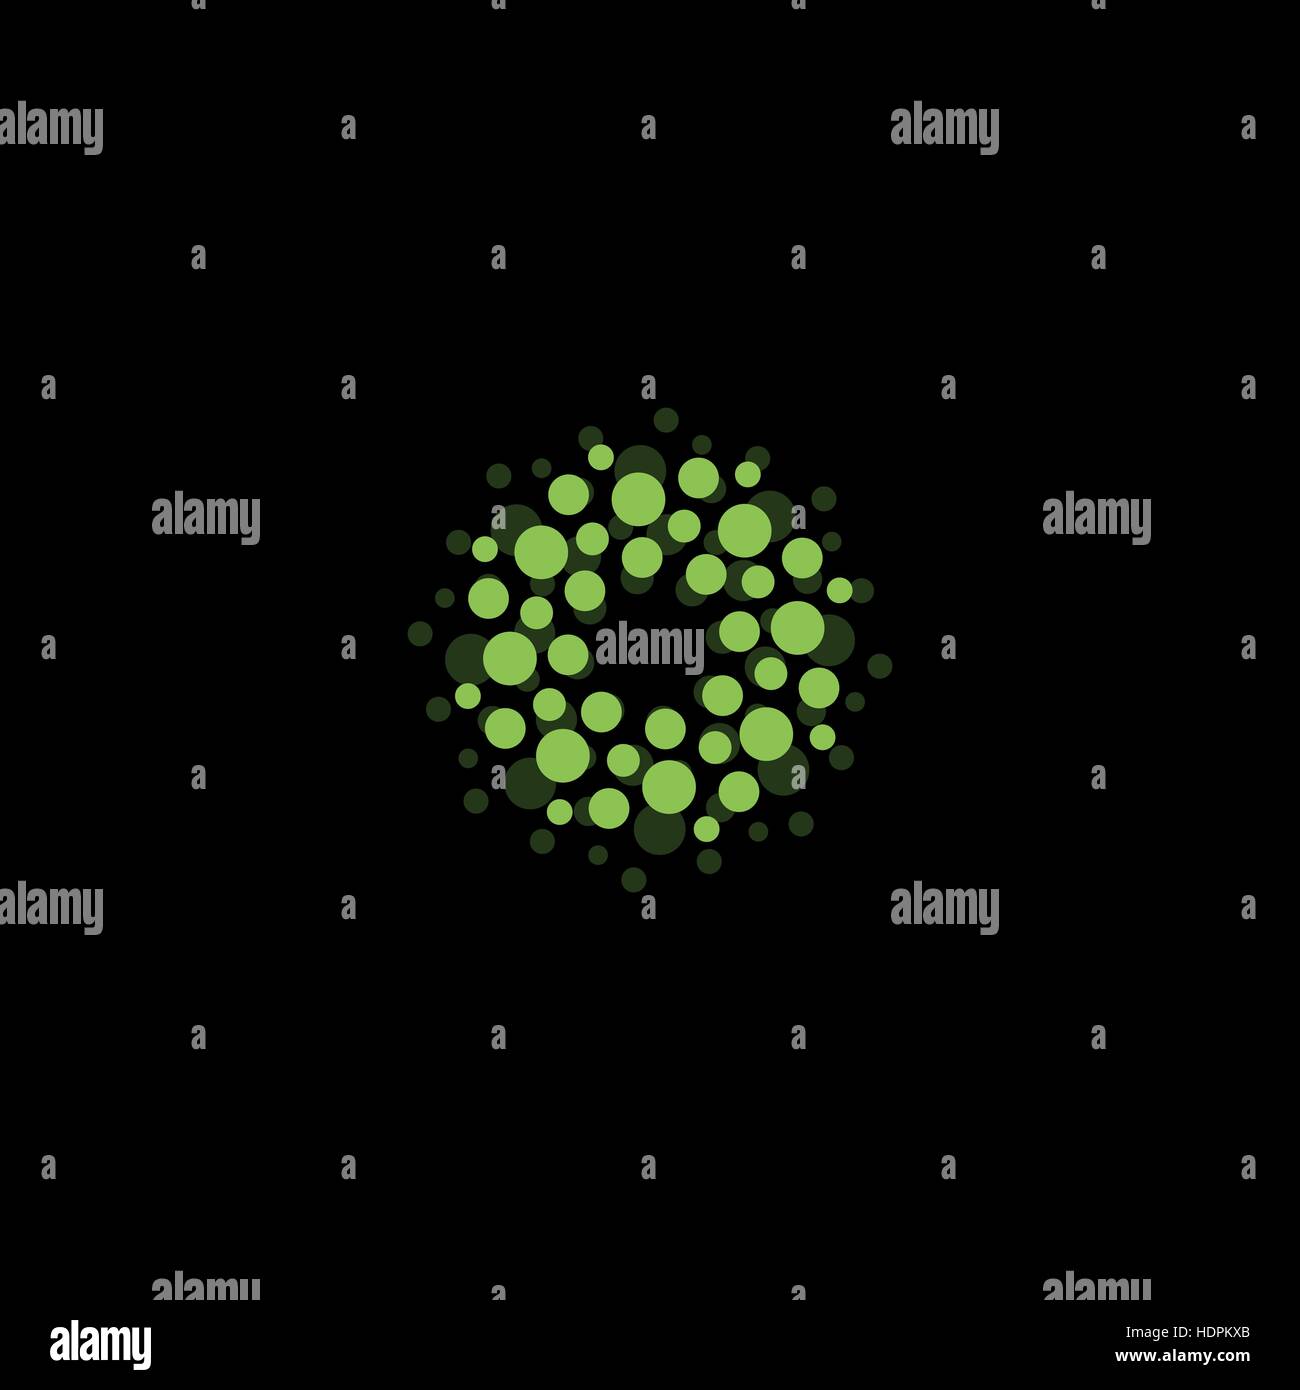 Abstrakt Kreis Logo. Ungewöhnliche gepunktete Runde isolierte Chem Logo. Virus-Symbol. Grüne Pflanze. Symbolblume. Kugel-Zeichen. Vektorgrafik Keime. Stock Vektor